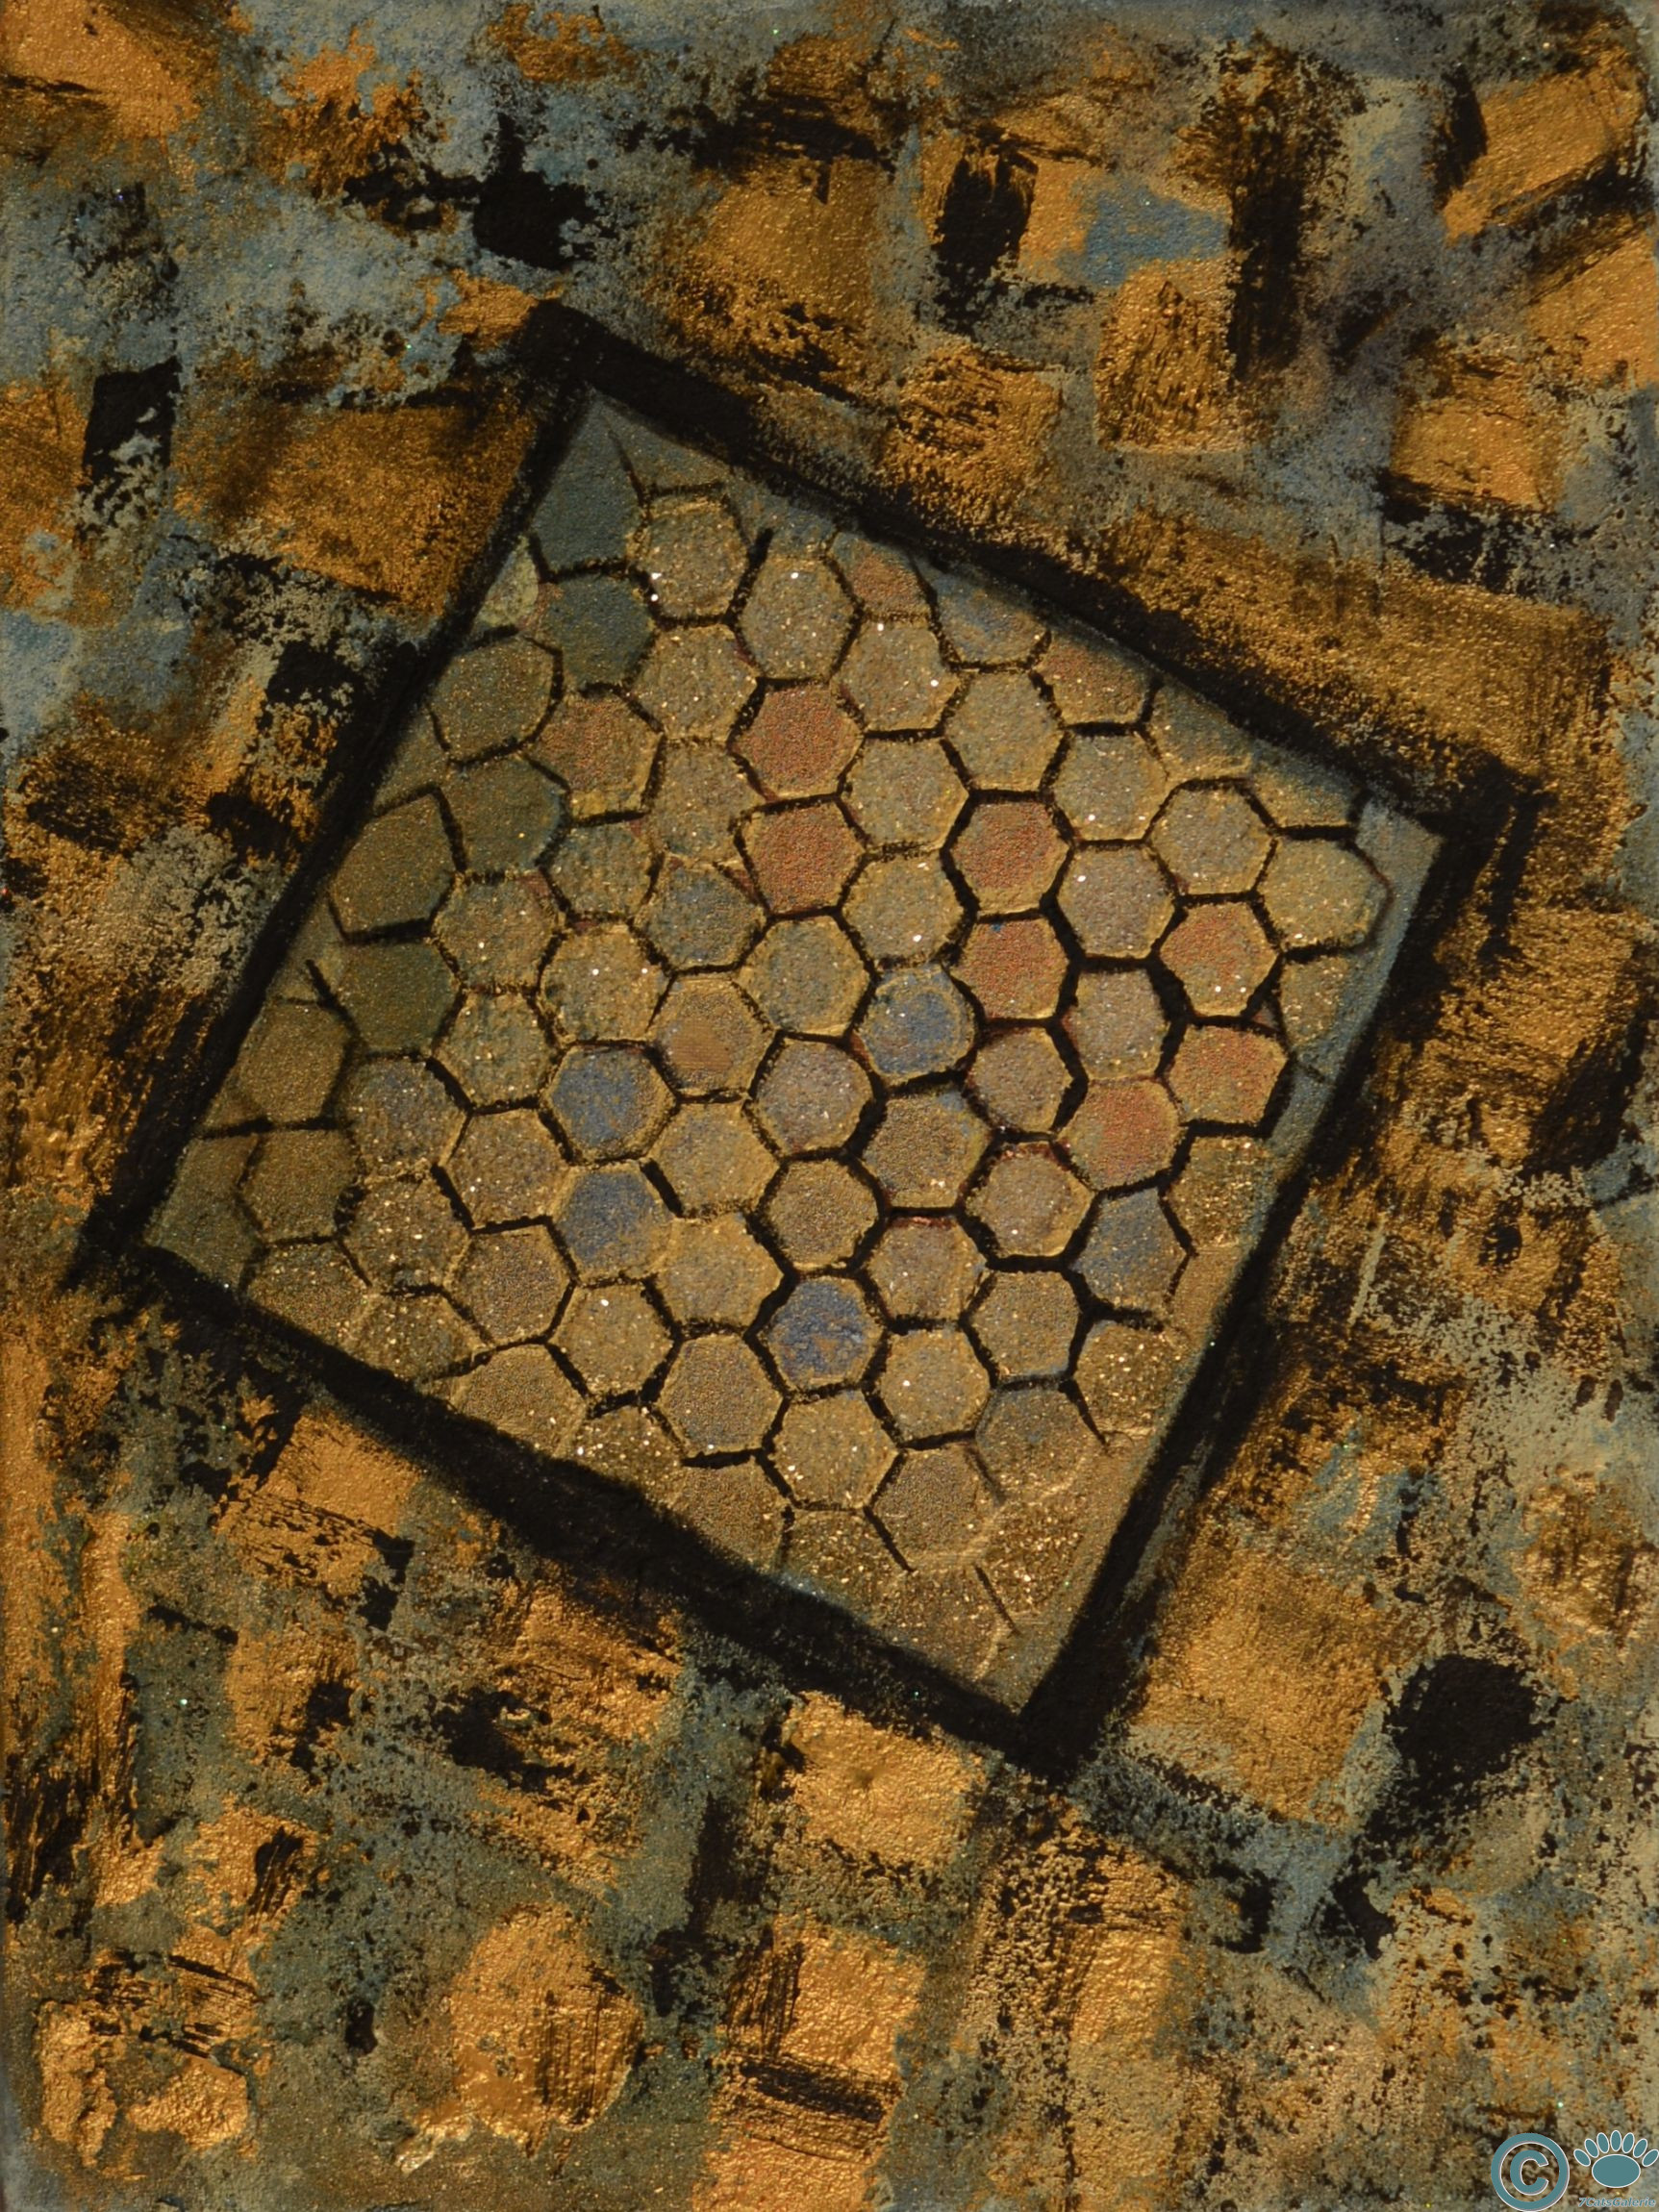 Honeycomb I (18" x 24")